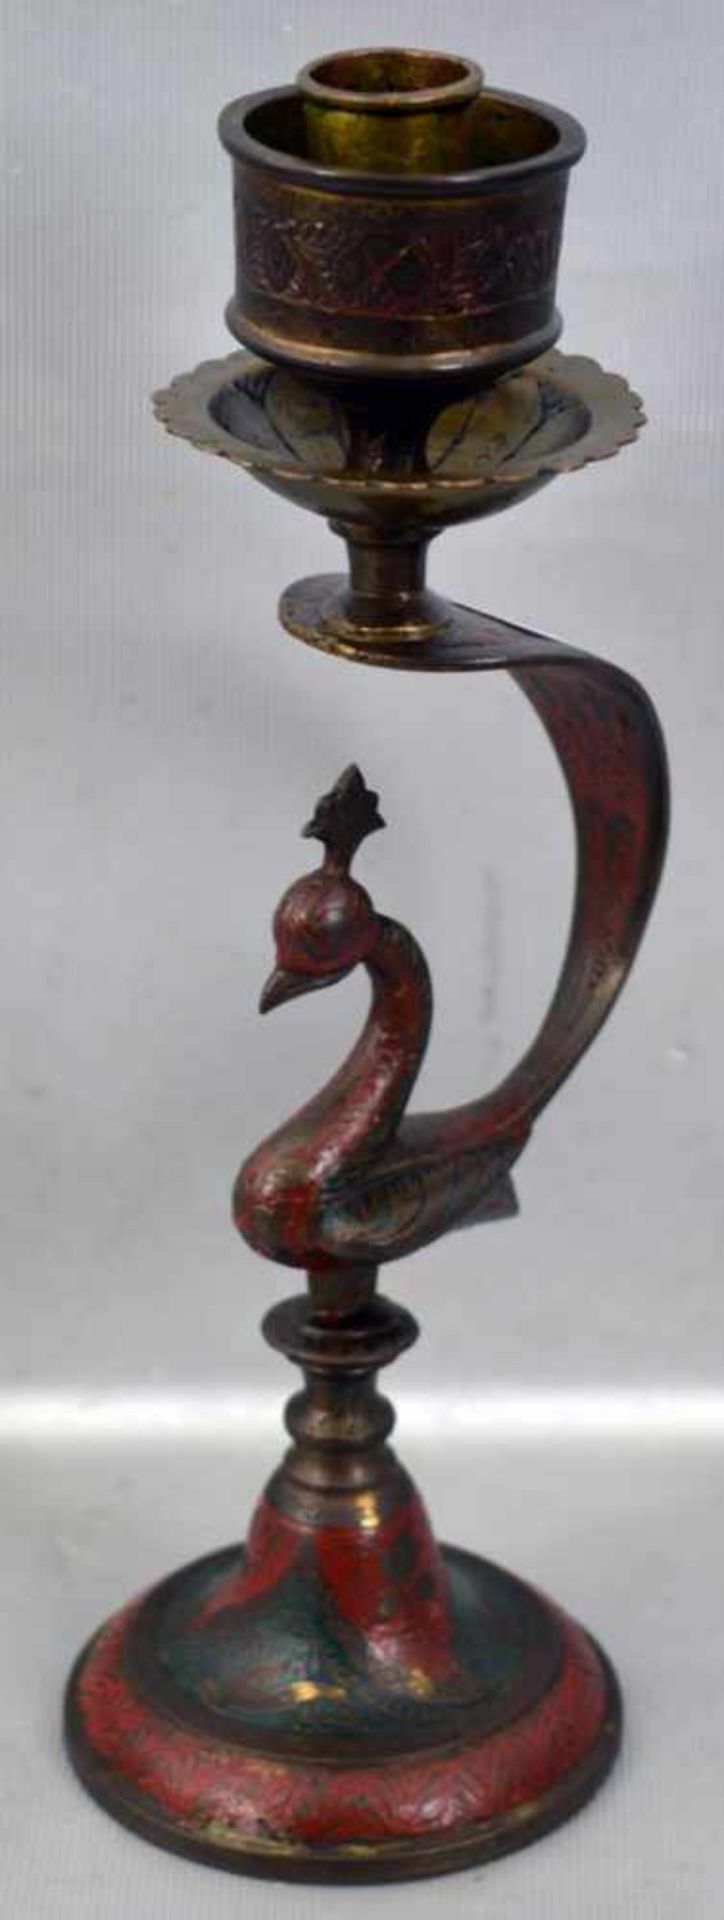 Orientalischer Leuchter 1-lichtig, Messing, runder Fuß, Schaft mit Tiermotiv verziert, teilweise rot